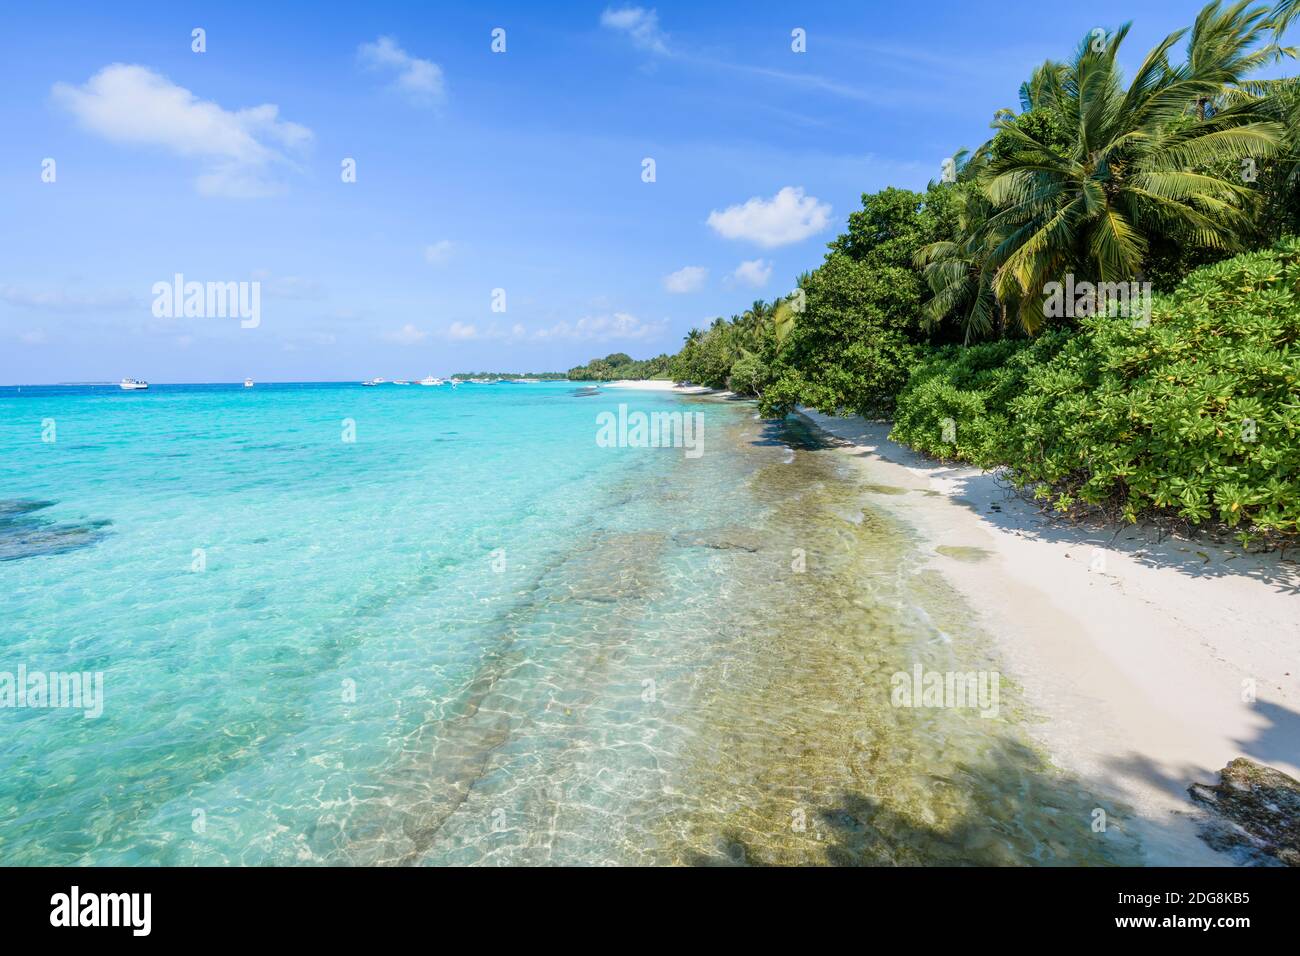 Malediven Strand Urlaub, vacaciones en la playa de Maldivas Foto de stock